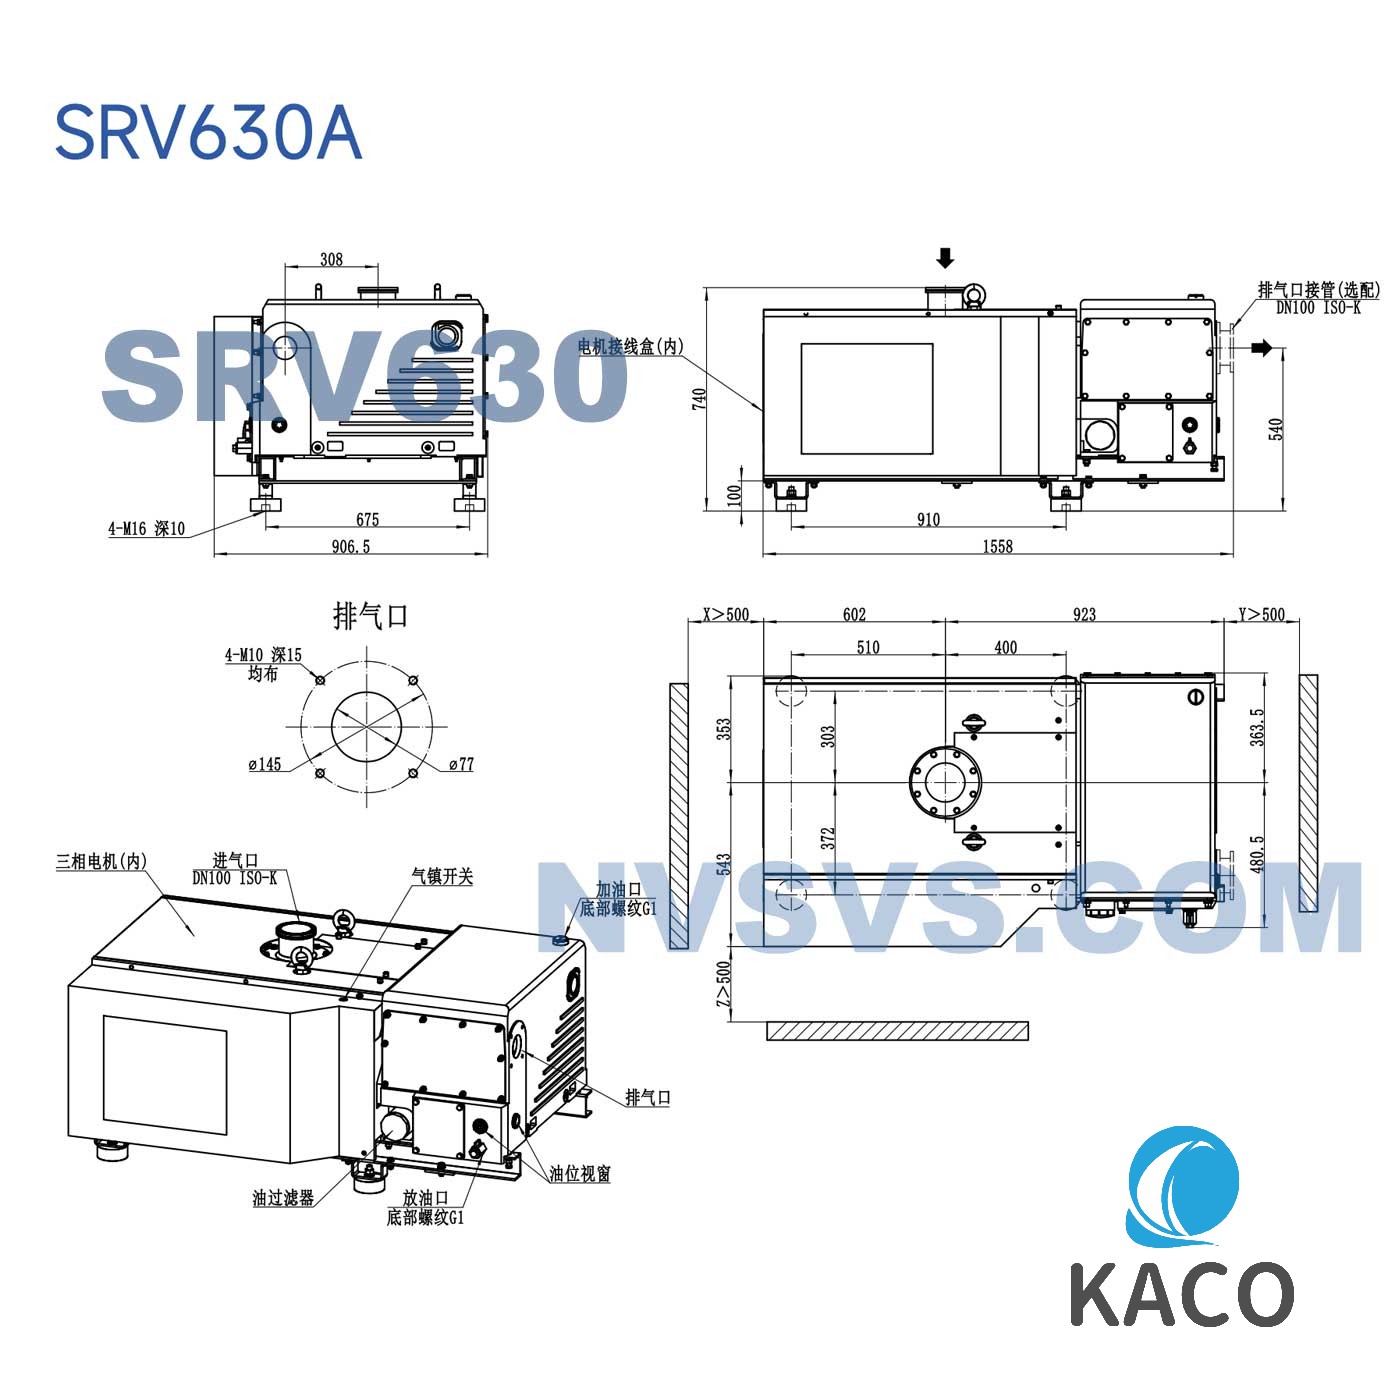 鲍斯真空泵SRV630A风冷单级油旋片泵图纸尺寸